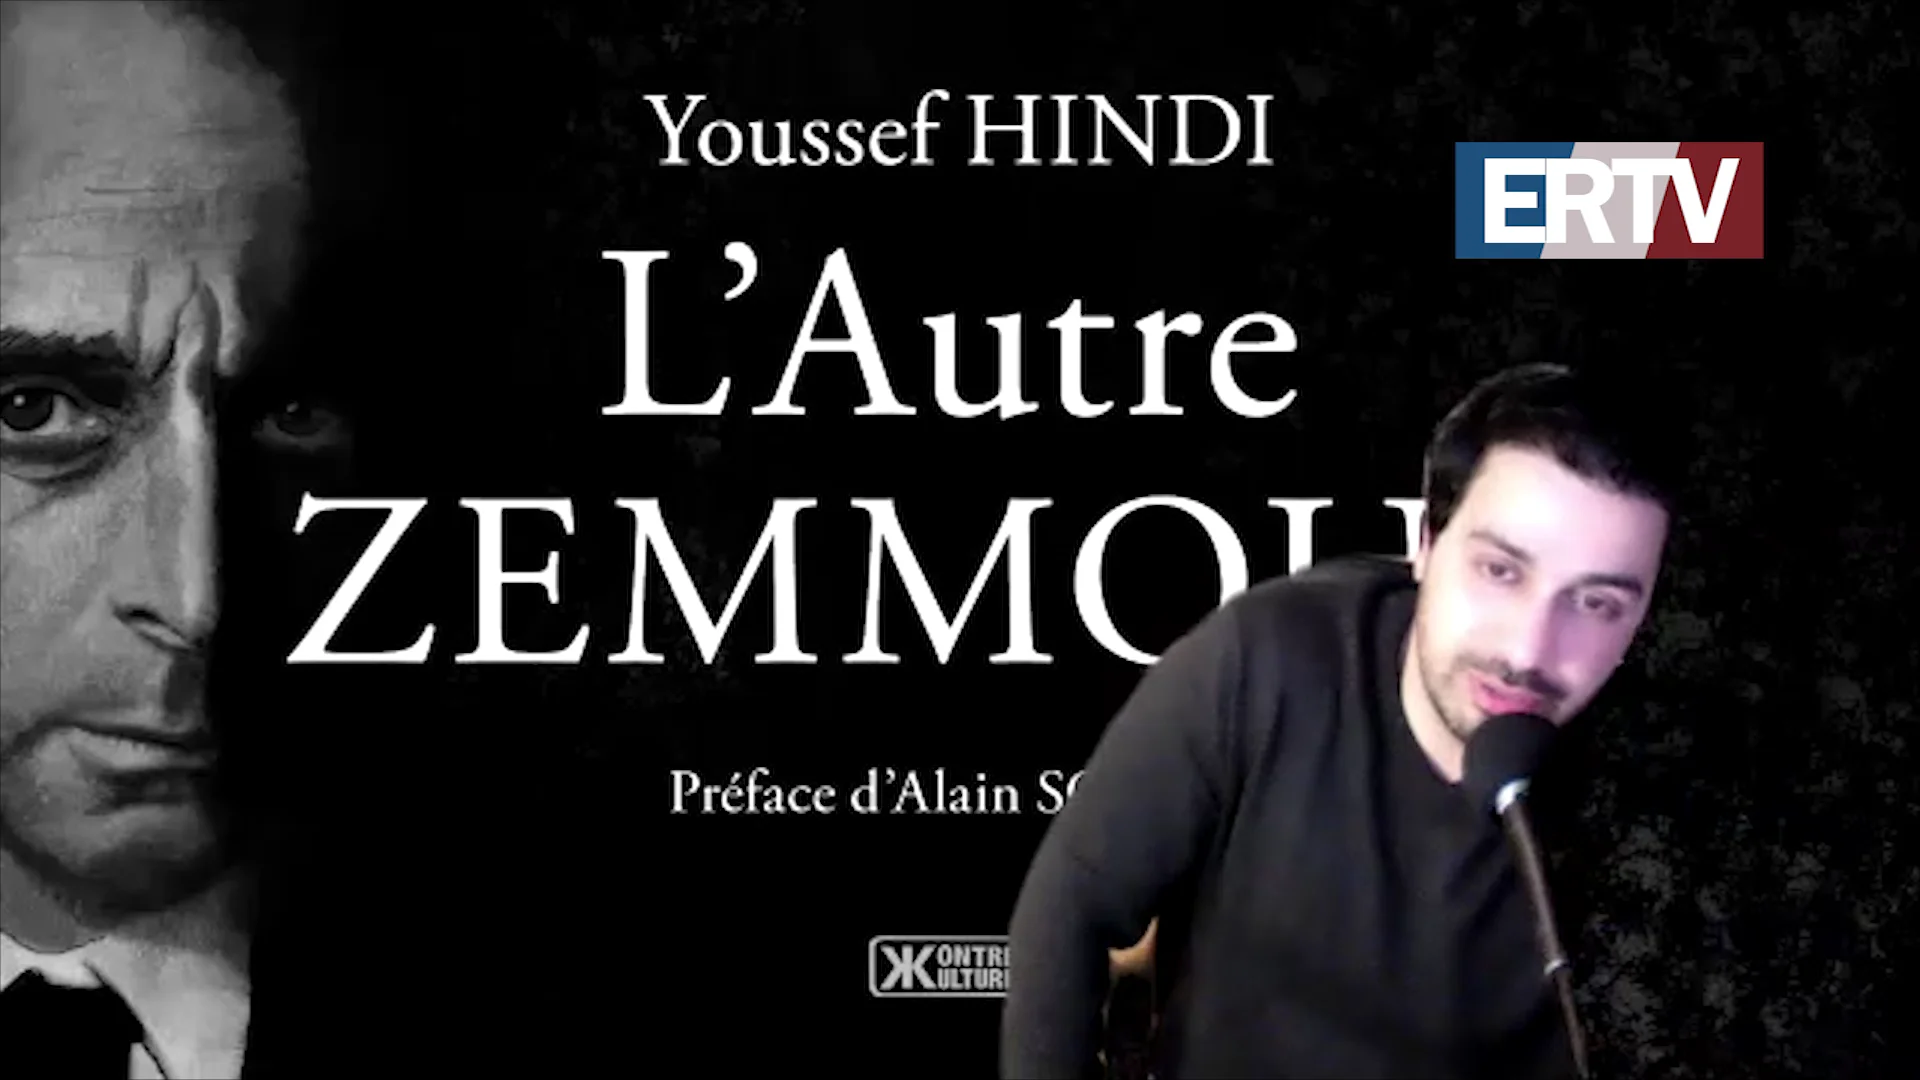 L’Autre Zemmour : rencontre-dédicace avec Youssef Hindi le 13 mars à la Librairie Vincent (Paris) !